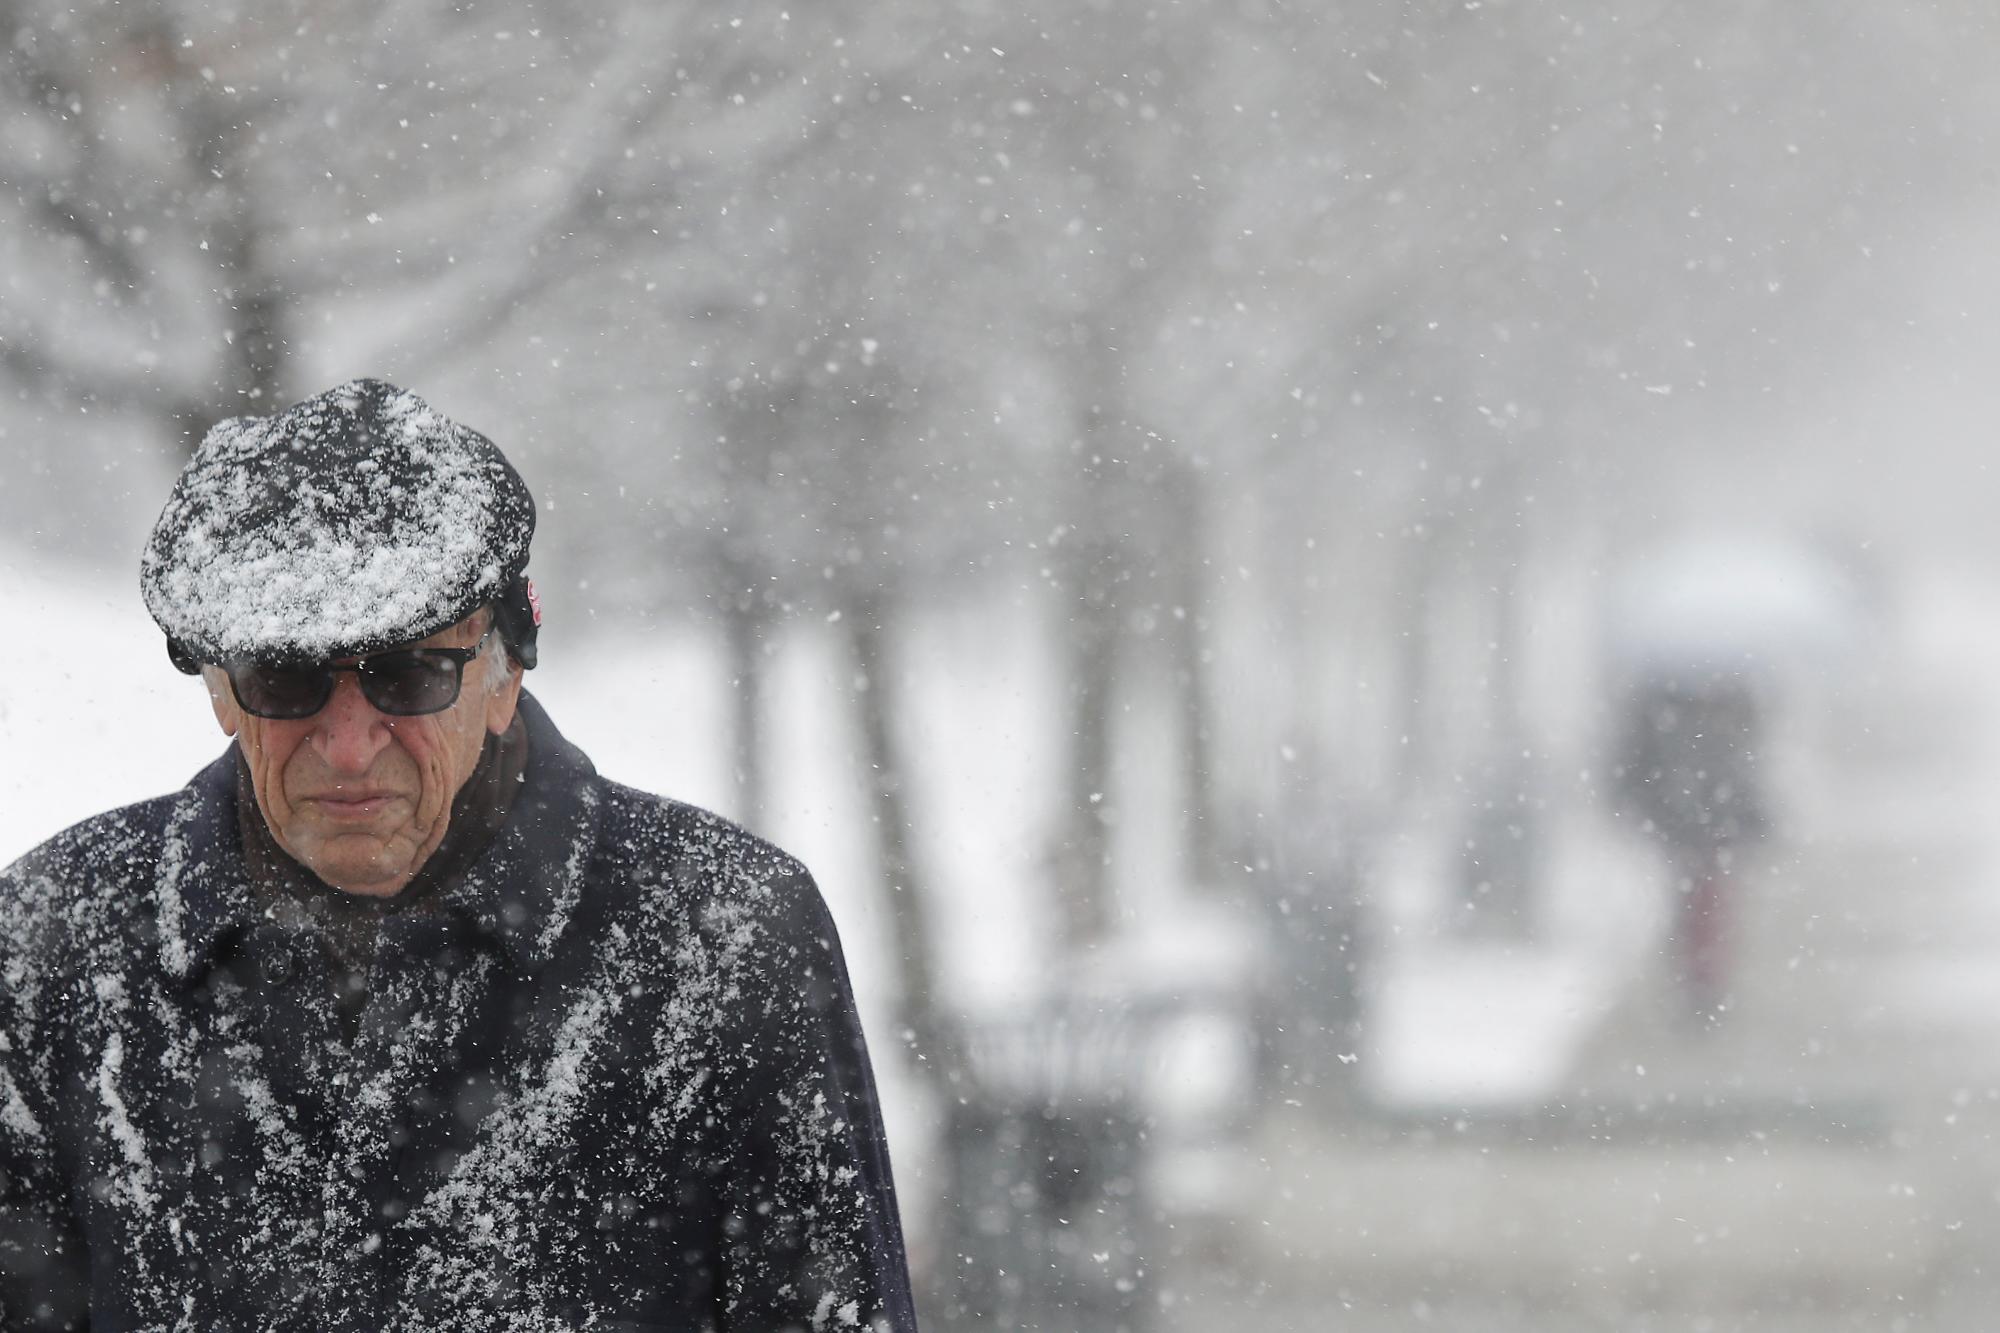 Un hombre se abre camino a través de la nevada en Sarajevo, Bosnia, el martes 22 de enero de 2019. Fueron nevadas en los países balcánicos que causaron estragos en toda la región.